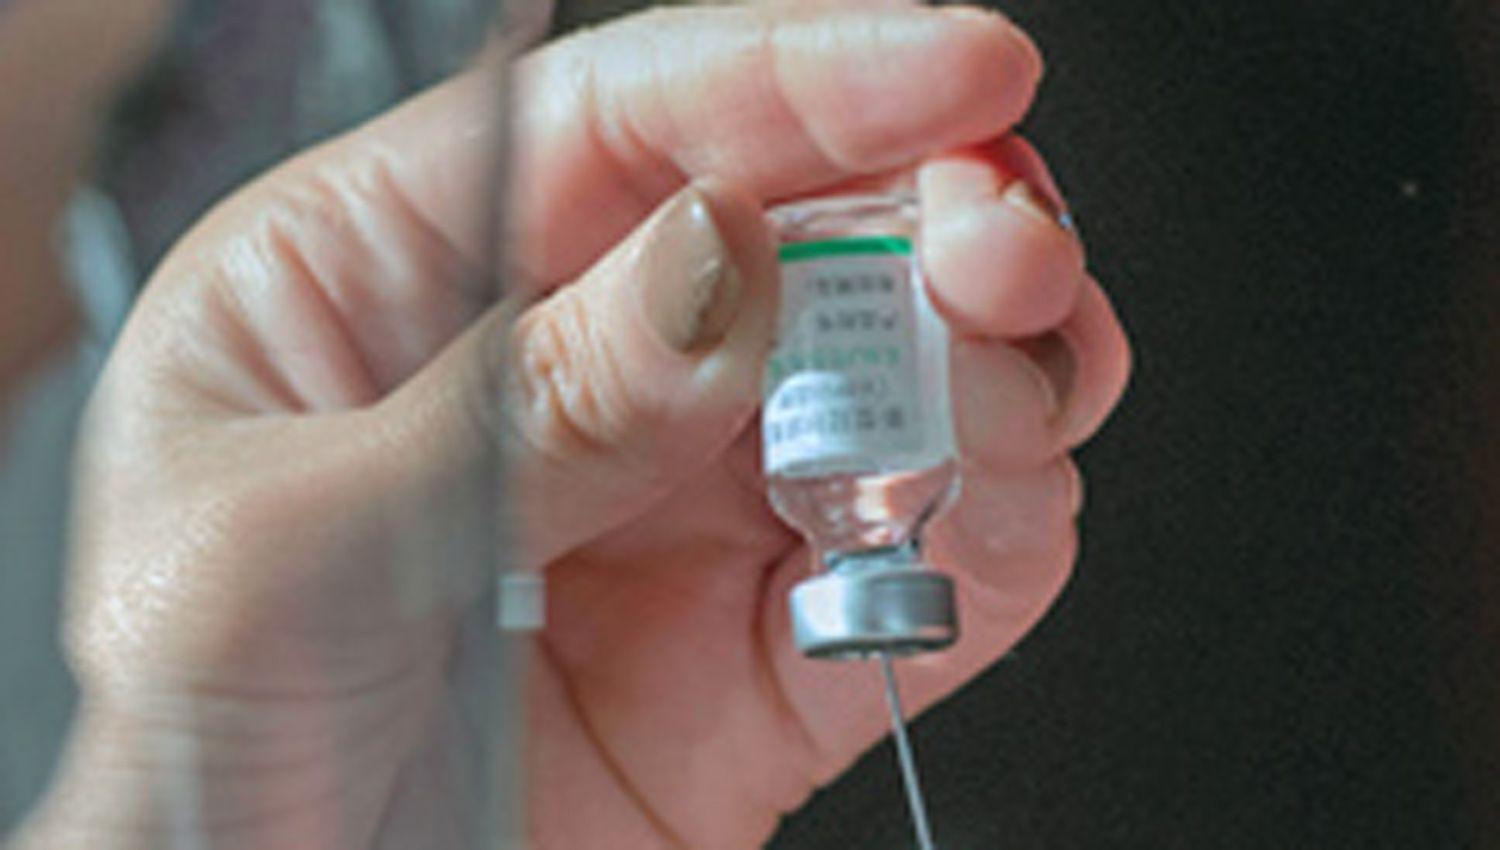 Maacutes restricciones y frenan uso de algunas vacunas